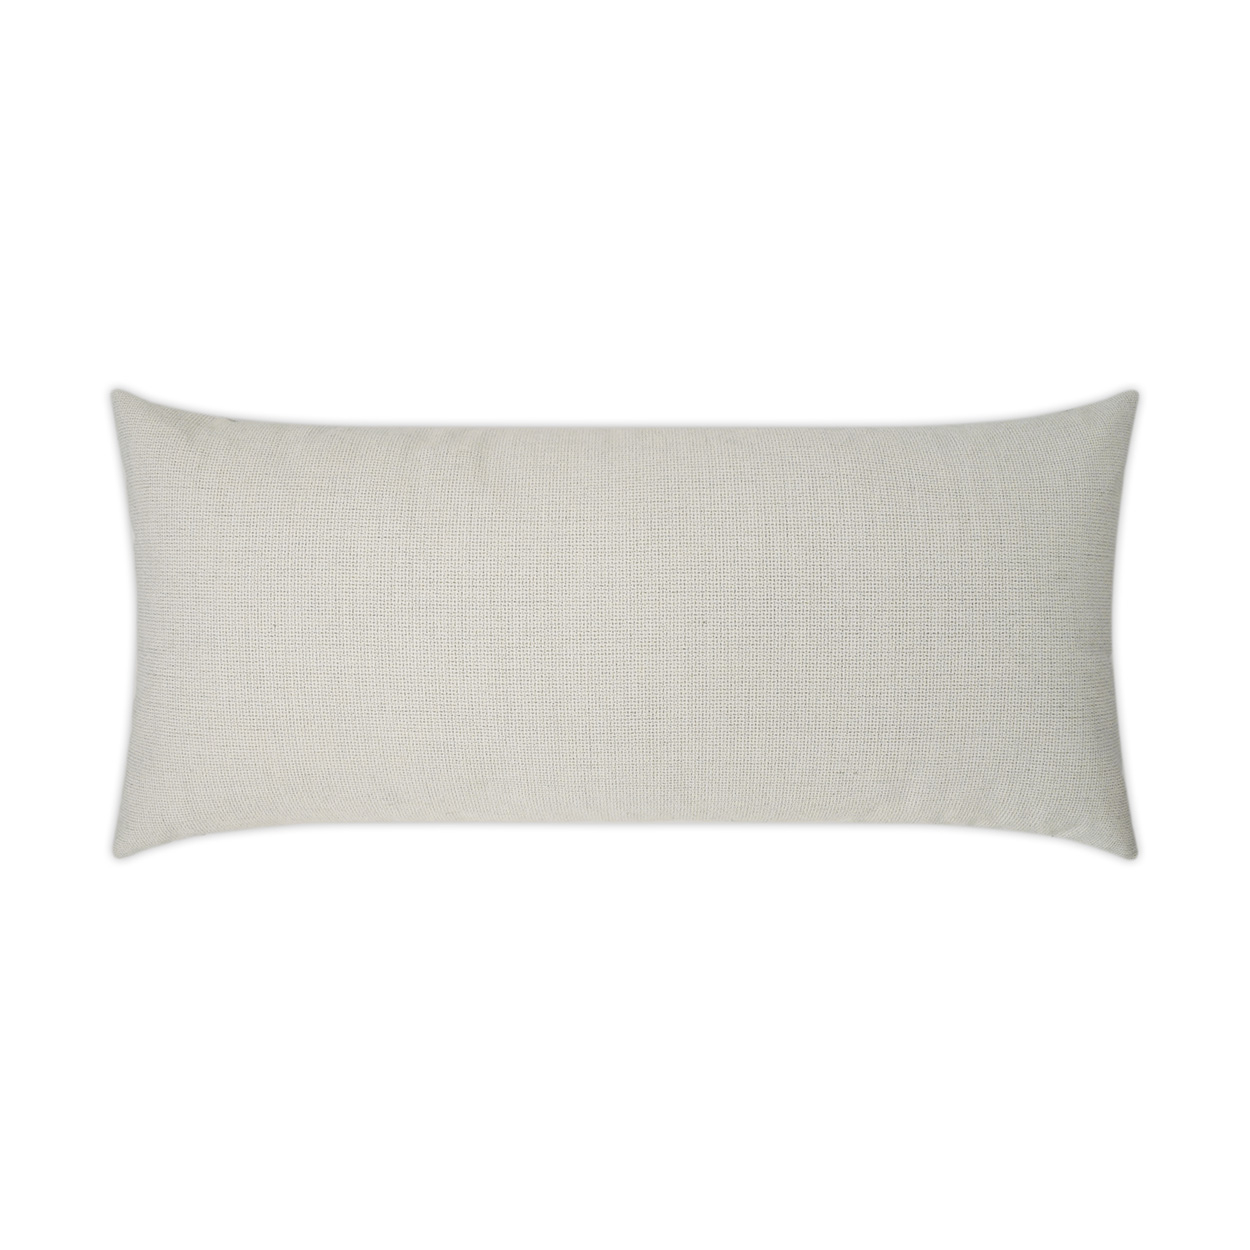 Bliss Linen Lumbar Outdoor Pillow 24x12